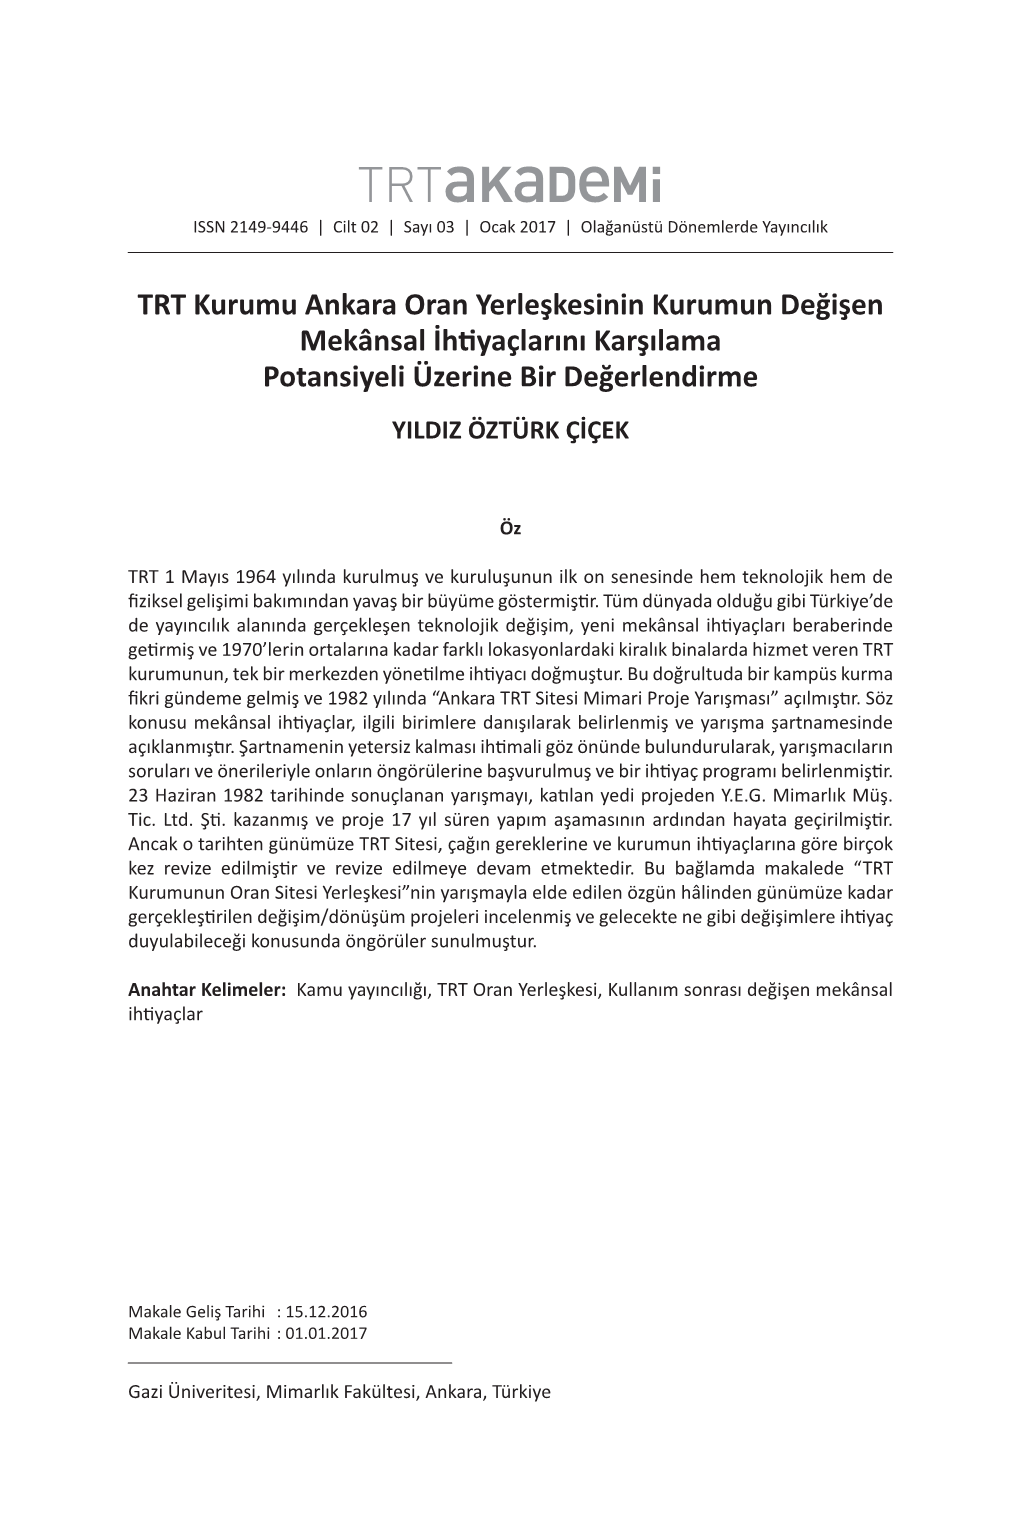 TRT Kurumu Ankara Oran Yerleşkesinin Kurumun Değişen Mekânsal İhtiyaçlarını Karşılama Potansiyeli Üzerine Bir Değerlendirme YILDIZ ÖZTÜRK ÇİÇEK